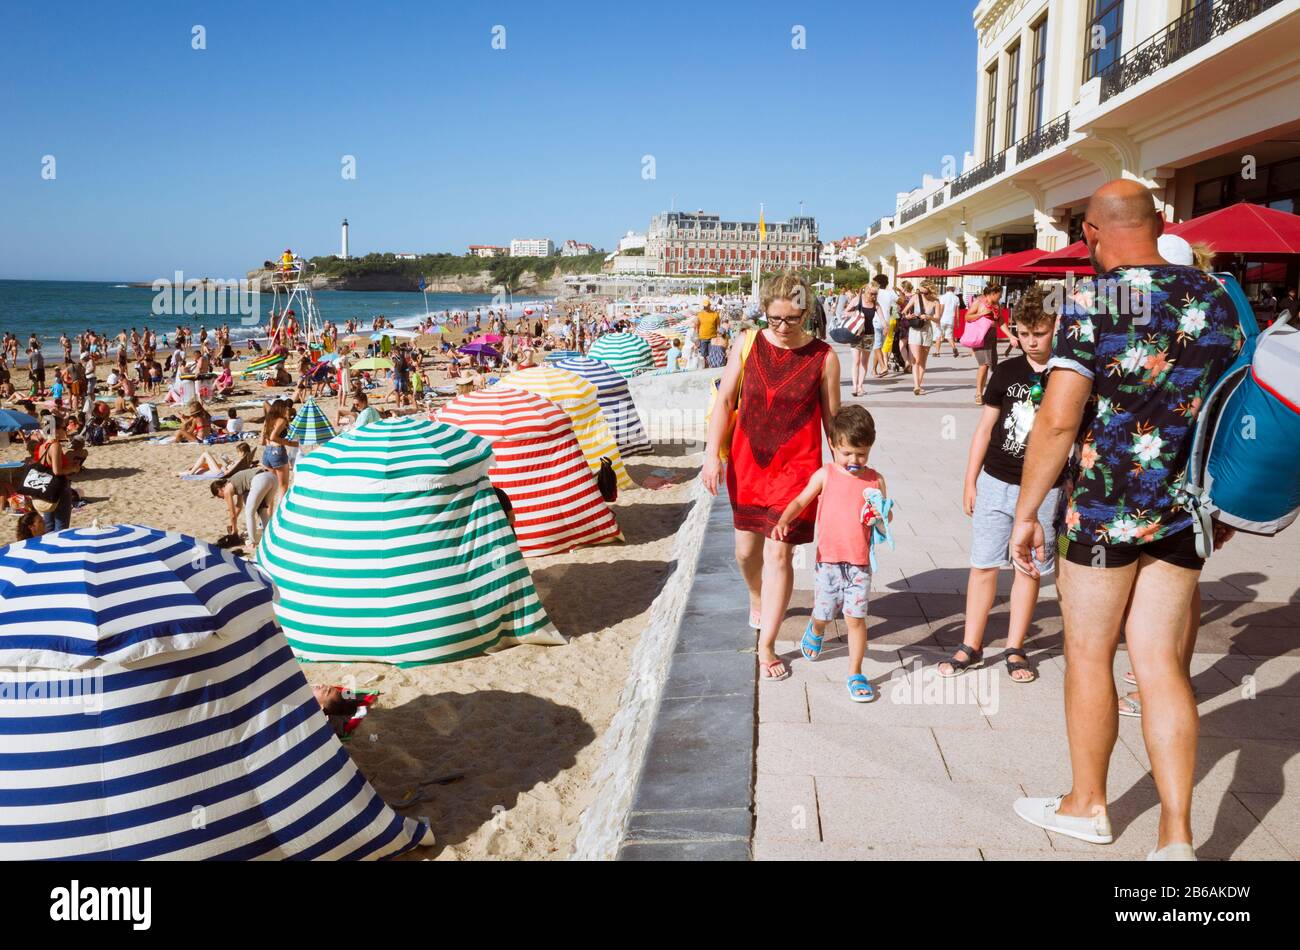 Biarritz, Pays basque français, France - 19 juillet 2019 : scène de rue avec des goéers de plage parmi des parasols colorés à la Grande Plage, le larg de la ville Banque D'Images